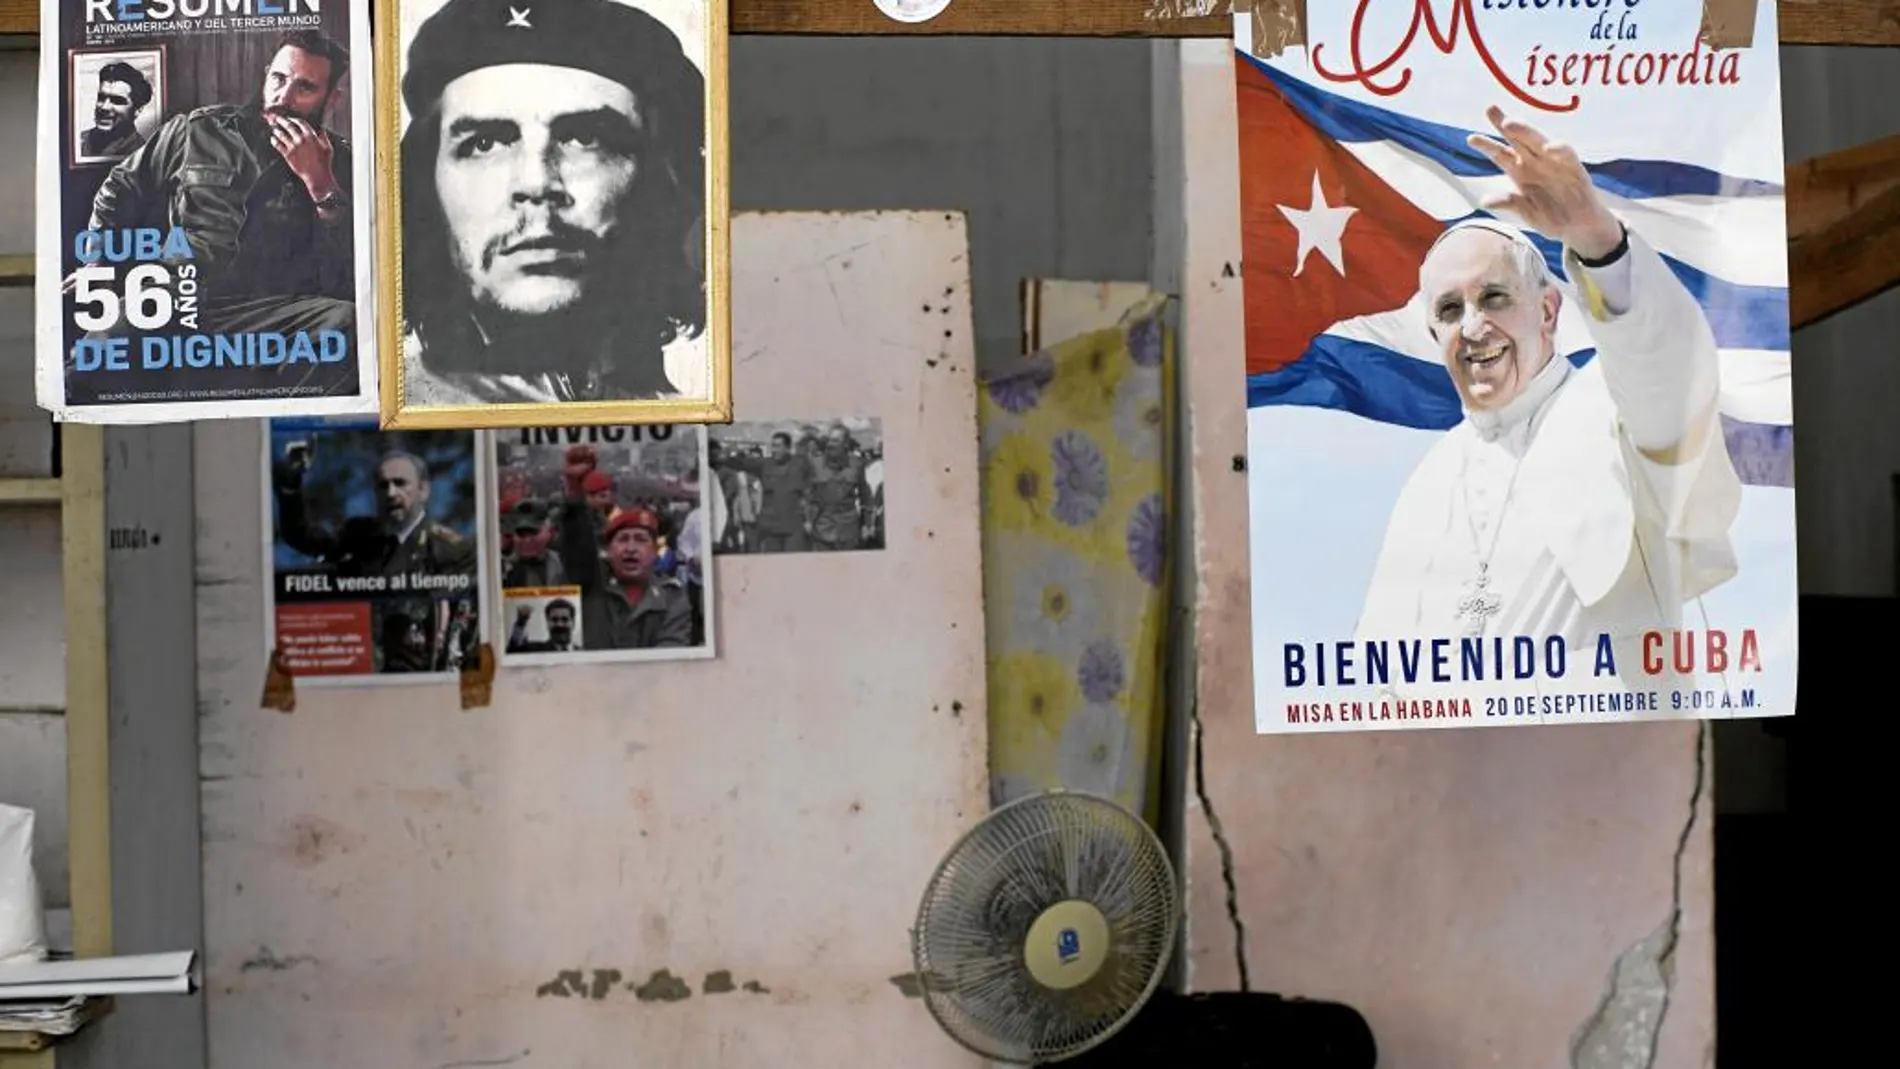 Los carteles que dan la bienvenida al Papa comparten espacio con líderes revolucionarios como el Che Guevara